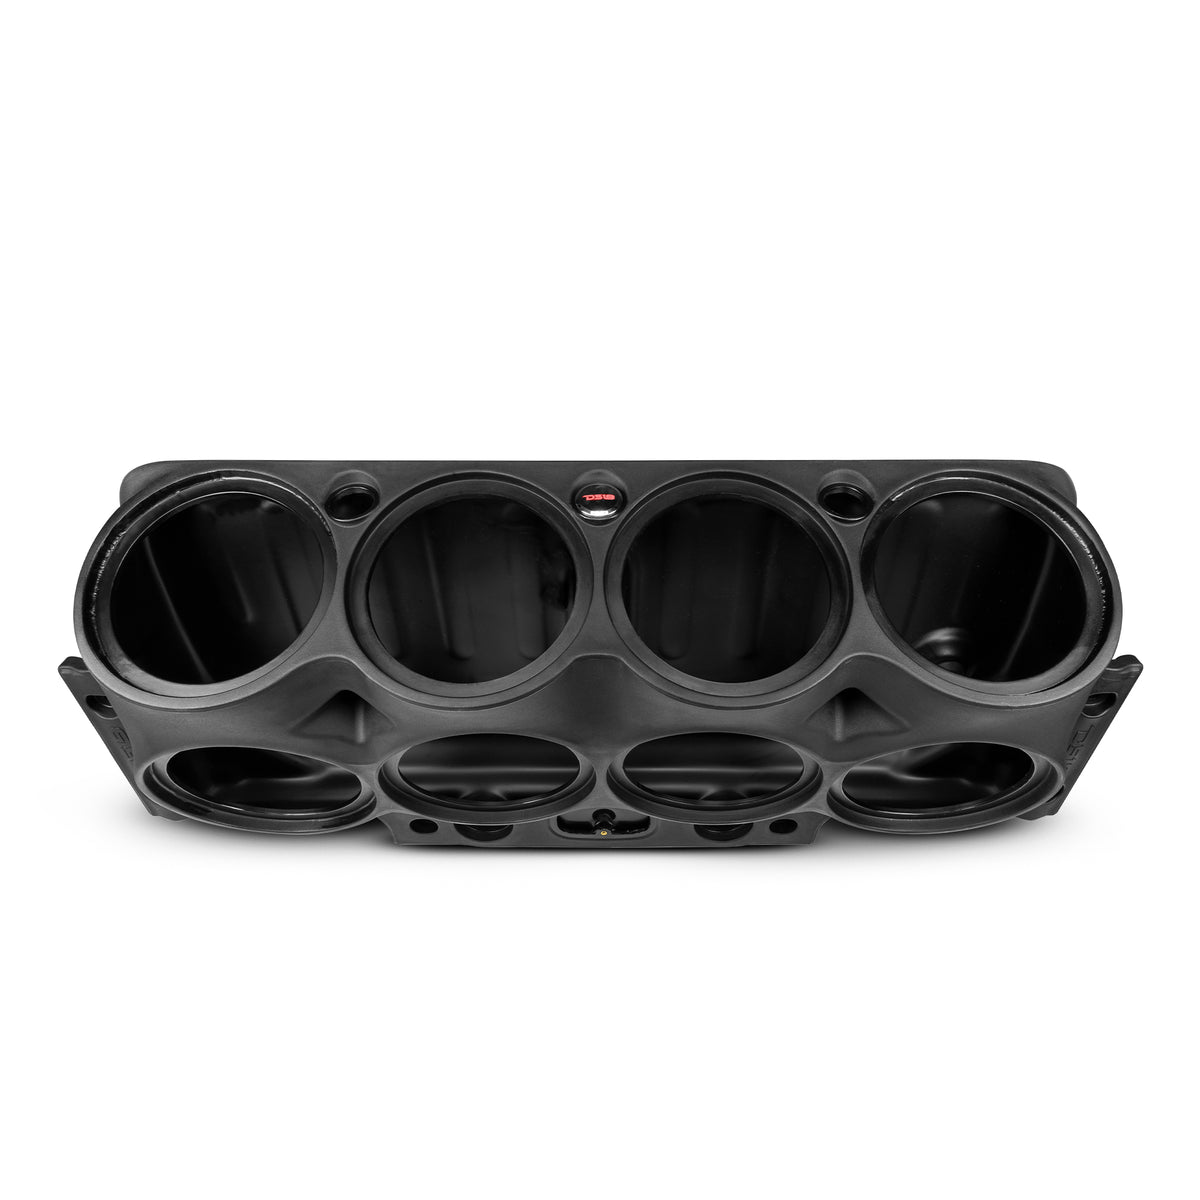 Jeep JK/JKU Overhead Bar System Fits 8 X 10" Speakers, 2 X 2.3" tweeters and 2 X 1 " Drivers -Black